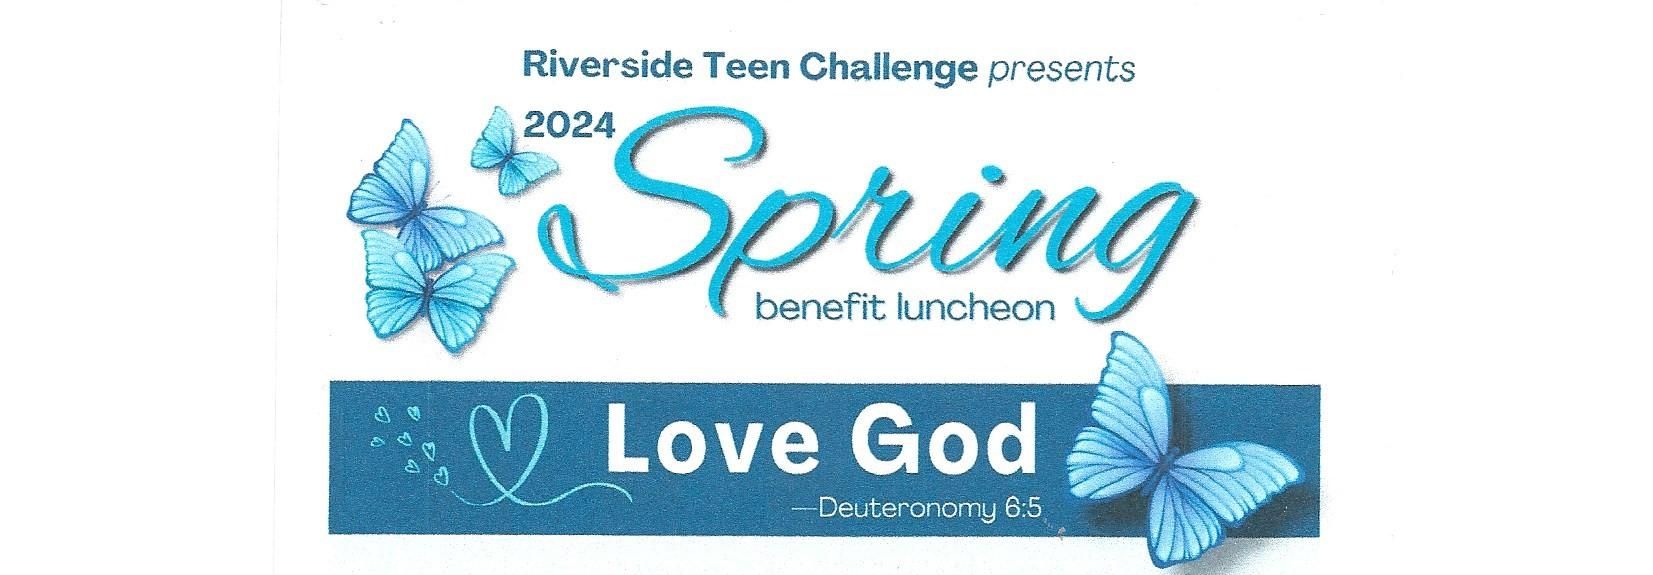 riverside teen challenge spring benefit luncheon2024 rev1